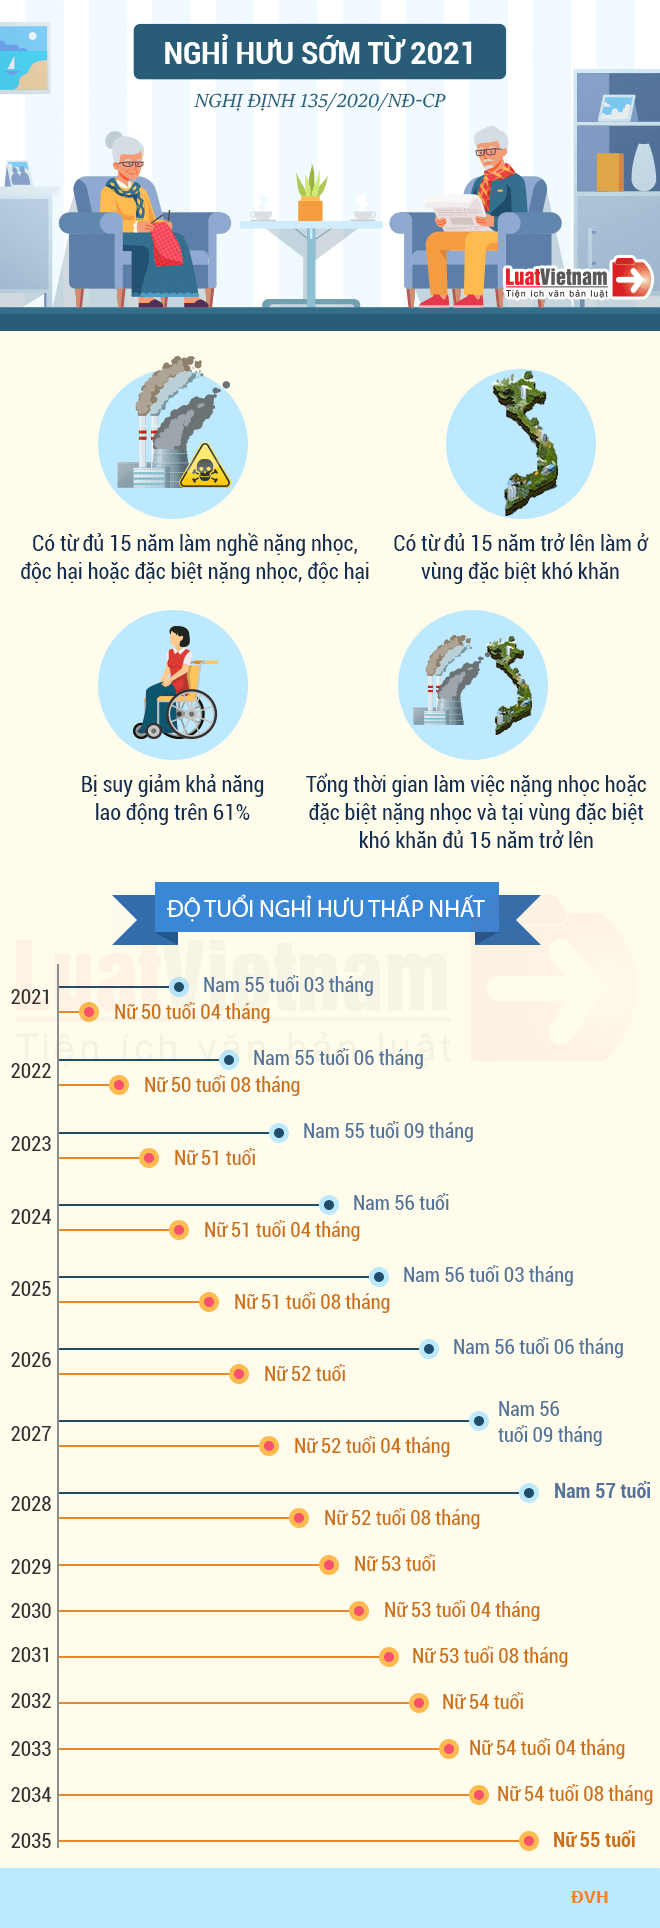 Infographic: 4 trường hợp NLĐ được nghỉ hưu sớm từ 2021